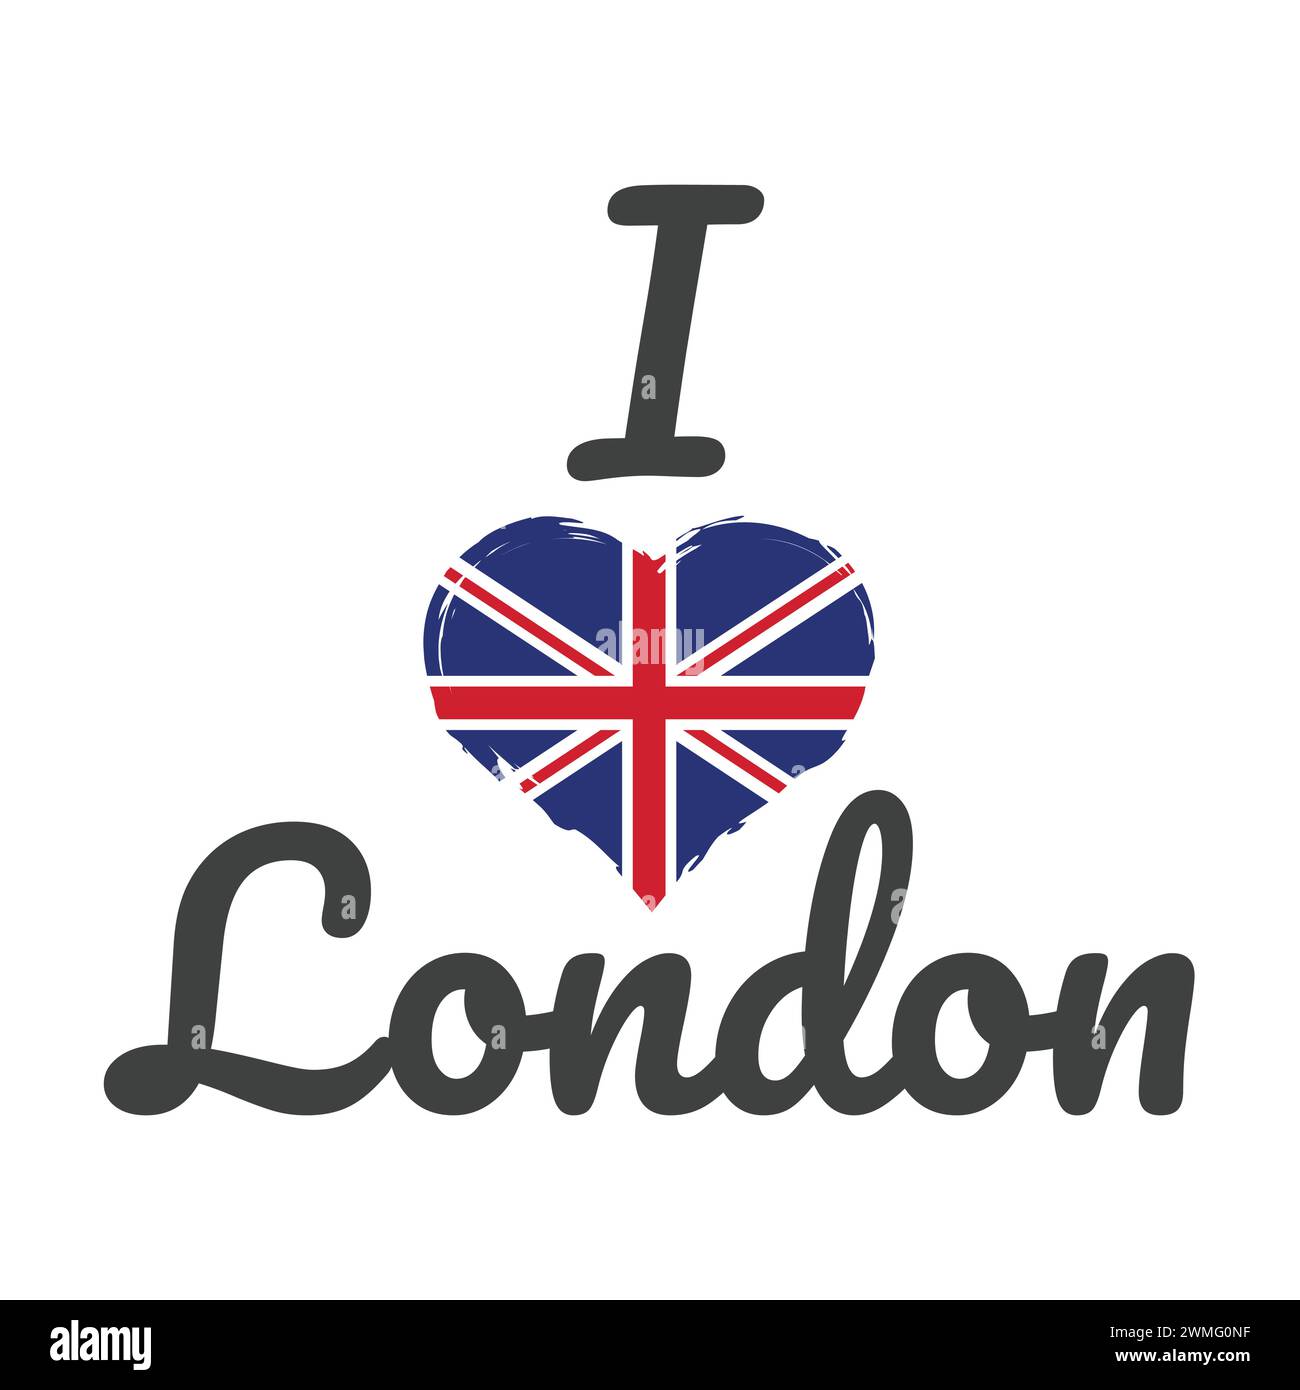 Ich liebe London mit dem Slogan der britischen Flagge. Design für T-Shirt-Vektorbeschriftung. Stock Vektor